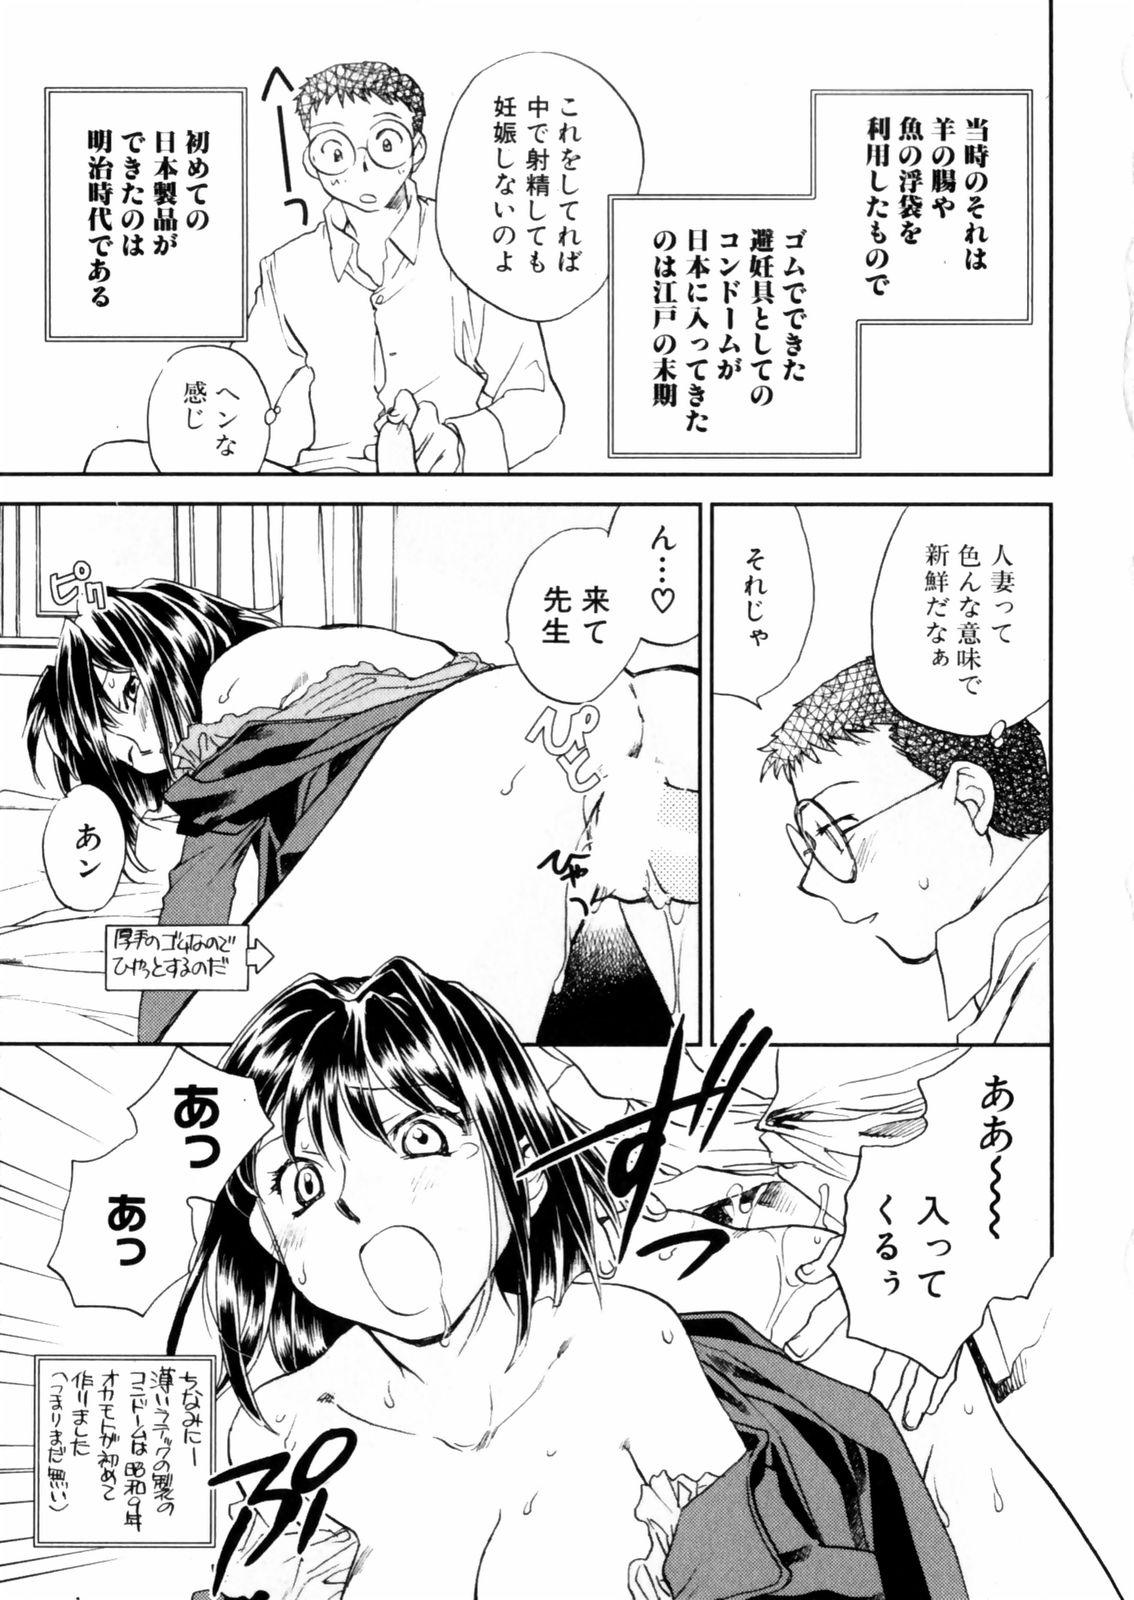 [Okano Ahiru] Hanasake ! Otome Juku (Otome Private Tutoring School) Vol.2 52